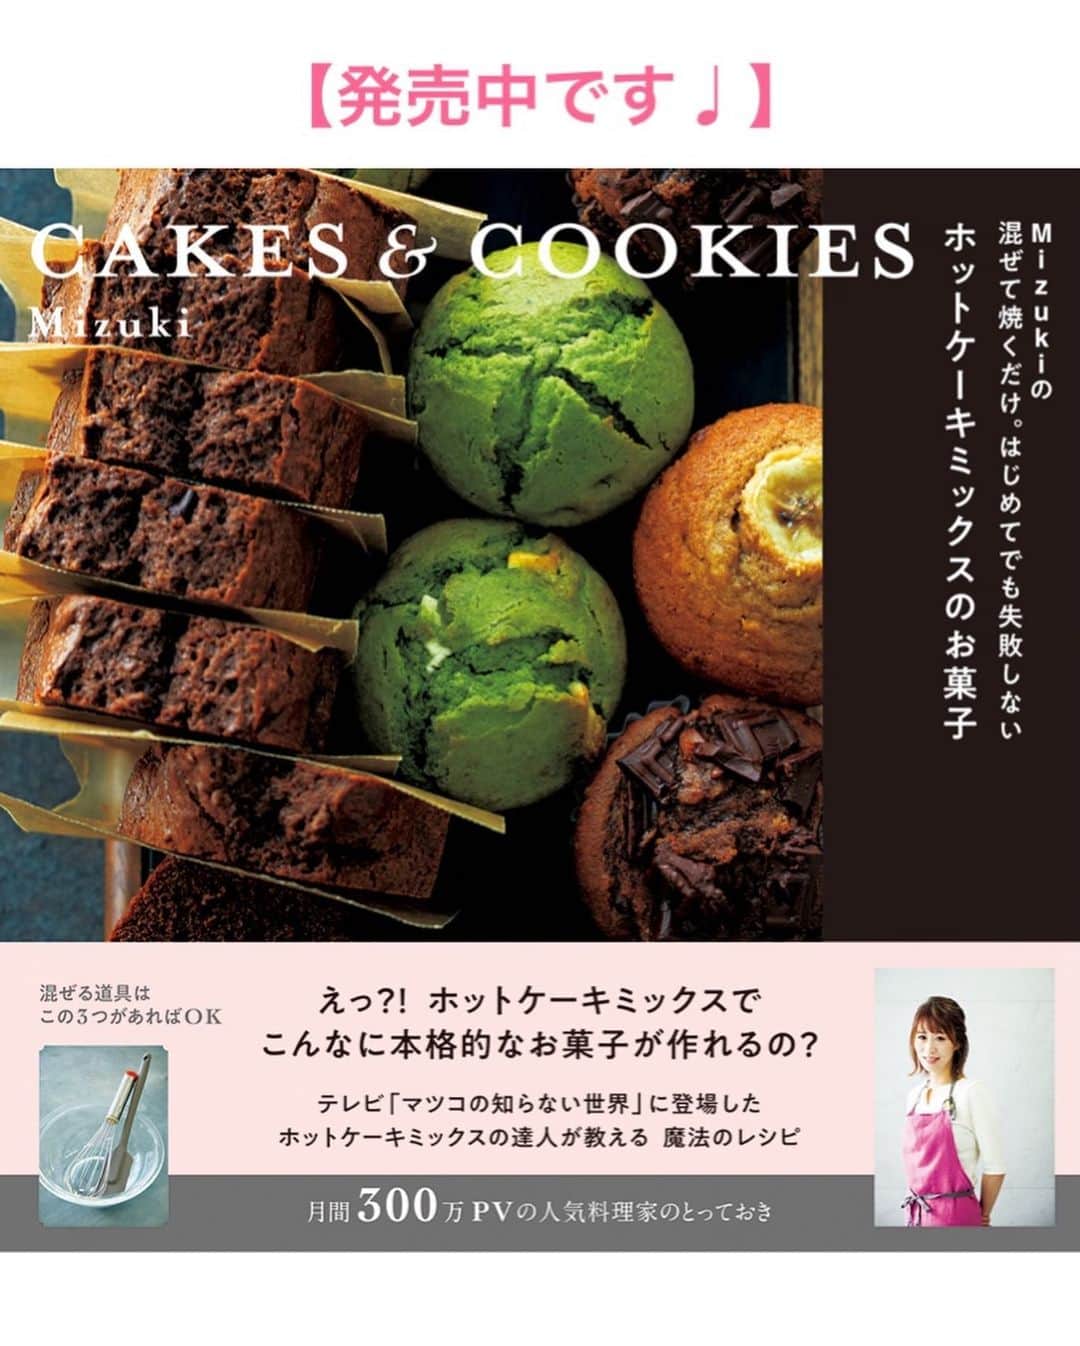 Mizuki【料理ブロガー・簡単レシピ】さんのインスタグラム写真 - (Mizuki【料理ブロガー・簡単レシピ】Instagram)「・﻿ 【レシピ】ーーーーーー﻿ ♡しっとり濃厚♡﻿ ロータスブラウニー﻿ ーーーーーーーーーーー﻿ ﻿ ﻿ おはようございます(*^^*)﻿ 今日はバレンタインにおすすめの﻿ ロータスブラウニーをご紹介させて頂きます♩﻿ (ロータスなしなら普通のブラウニー！)﻿ ﻿ 作り方は超簡単(*´艸`)﻿ 混ぜるだけの生地に﻿ ロータスビスケットをのせて焼くだけ♩﻿ こんなに簡単なのにお味は抜群！﻿ しっとり濃厚&お洒落に仕上がりますよ♡﻿ ﻿ ブラウニーは持ち運びもしやすいので﻿ プレゼントにぴったりです♩﻿ よかったらお試し下さいね(*^^*)﻿ ﻿ ﻿ ﻿ ーーーーーーーーーーーーーーーーーー﻿ 【15cm角型1台分】﻿ チョコレート...150g﻿ バター...50g﻿ 卵...2個﻿ 牛乳...大1﻿ ●薄力粉...50g﻿ ●ココアパウダー...10g﻿ ロータスビスケット...8枚﻿ ﻿ ﻿ (準備)型にクッキングシートを敷く。●は合わせてふるっておく。板チョコは細かく刻み、バターは適当に切る。卵は溶いておく。オーブンを180度に予熱する。﻿ 1.耐熱ボウルにチョコとバターを入れ、600Wのレンジで1分10秒加熱して混ぜ溶かす。(溶け残る場合は10秒追加加熱する。)﻿ 2.卵を加えて手早く混ぜ、続けて牛乳も加えて混ぜる。ゴムベラに持ち替え、●を加えてさっくり混ぜる。﻿ 3.型に注ぎ、ロータスビスケットをさっと牛乳にくぐらせてから乗せる。(この牛乳は分量外。省略可)予熱したオーブンで20〜25分焼く。﻿ ーーーーーーーーーーーーーーーーーー﻿ ﻿ ﻿ 《ポイント》﻿ ♦︎バターは有塩でも無塩でもOK！﻿ ♦︎チョコの種類はお好みで♩(私はブラック)﻿ ♦︎卵を加えたら手早く混ぜて下さい♩﻿ ♦︎ロータスビスケットを牛乳にくぐらせると、焼いても割れにくくなります♩﻿ ♦︎焼けたらアミに乗せて冷まし、一晩寝かせるとよりしっとりします♩﻿ ﻿ ﻿ ﻿ ﻿ ＿＿＿＿＿＿＿＿＿＿＿＿＿＿＿＿＿﻿ ＿＿＿＿＿＿＿＿＿＿＿＿＿＿＿＿＿﻿ 🎀新刊発売中🎀﻿ 【#ホットケーキミックスのお菓子 】﻿ ﻿ 今回は一冊まるっとホケミスイーツ♩﻿ 普段のおやつから﻿ 特別な日にも使えるレシピを﻿ この一冊に詰め込みました(*^^*)﻿ ホットケーキミックスを使えば﻿ 簡単に本格的なお菓子が作れますよ♡﻿ バレンタインにもご活用下さいませ♩﻿ ﻿ 🔹ハイライトにリンクあります♩🔹﻿ ＿＿＿＿＿＿＿＿＿＿＿＿＿＿＿＿＿﻿ ＿＿＿＿＿＿＿＿＿＿＿＿＿＿＿＿＿﻿ ﻿ ﻿ ﻿ 【お知らせ】﻿ ストーリーズでは一日数回﻿ 別レシピをご紹介しております(*^^*)﻿ ＊コメントは最新の投稿に下さいますよう﻿ お願い致しますm(_ _)m﻿ ﻿ ﻿ ﻿ #ブログ更新しました﻿ ブログはプロフ画面のリンクよりご覧下さい↓﻿ @mizuki_31cafe﻿ 【Mizuki公式ラインブログ】﻿ https://lineblog.me/mizuki_official/﻿ ﻿ ﻿ ﻿ ﻿ #バレンタイン#チョコ#友チョコ#ブラウニー#バレンタインレシピ#ロータスビスケット﻿ #Mizuki#簡単レシピ#時短レシピ#節約レシピ#料理#レシピ#フーディーテーブル#おうちごはん#おうちカフェ#デリスタグラマー#料理好きな人と繋がりたい#料理ブロガー#おうちごはんlover#器#マカロニメイト#ブログ﻿ #foodpic#follow#cooking#recipe#lin_stagrammer#ロータスブラウニーm」2月12日 7時03分 - mizuki_31cafe